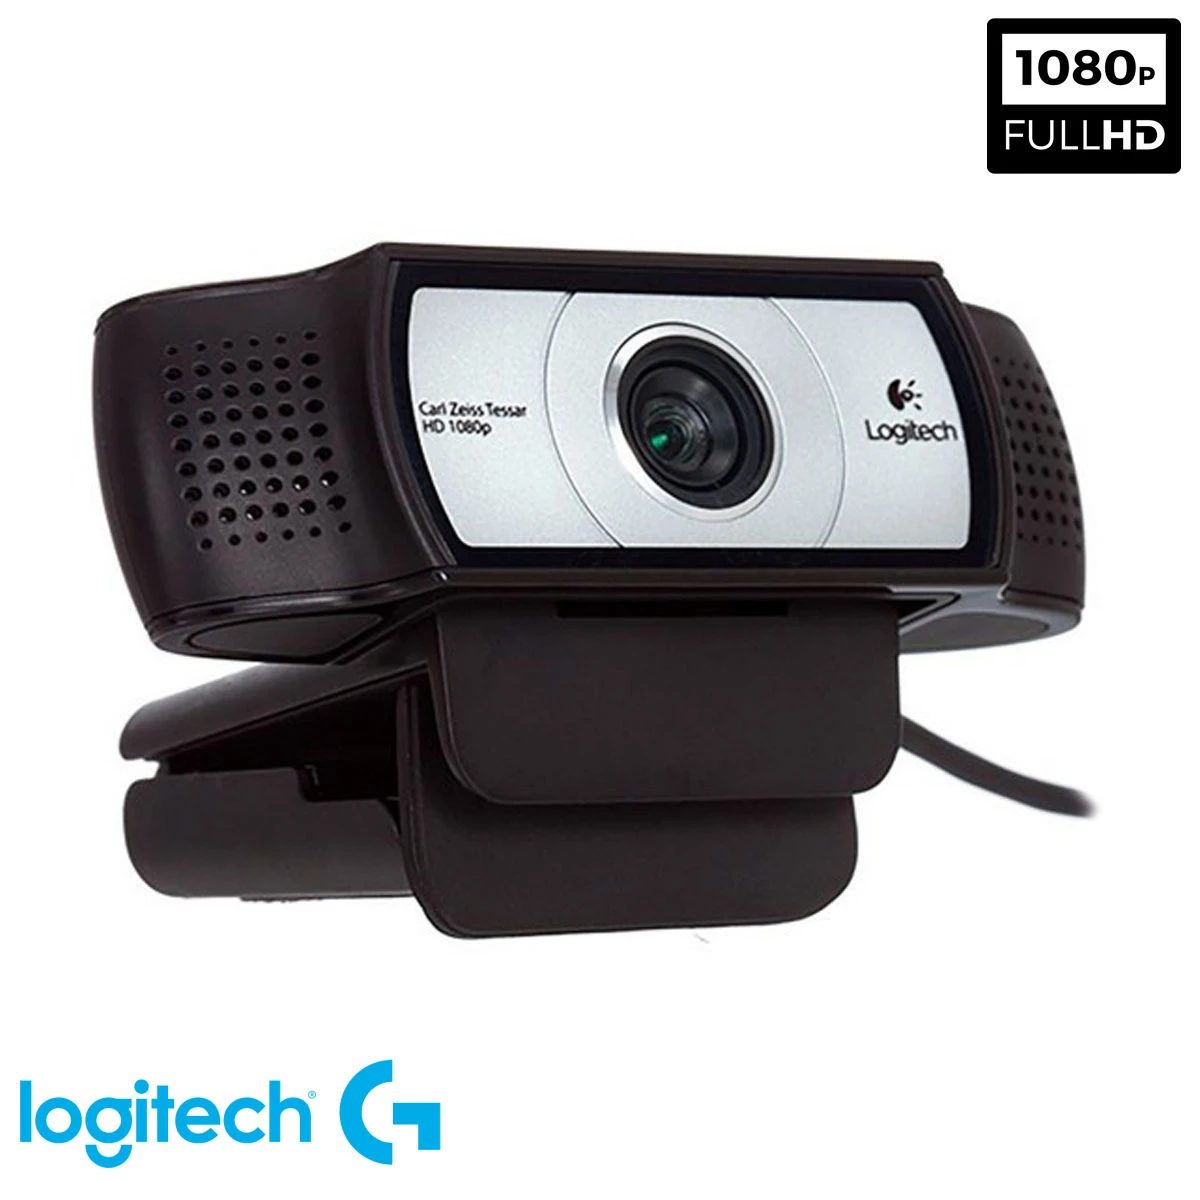 difícil dentro de poco tempo Cámara Webcam Logitech C930e Full HD Ultra Wide Angle | Quito Ecuador